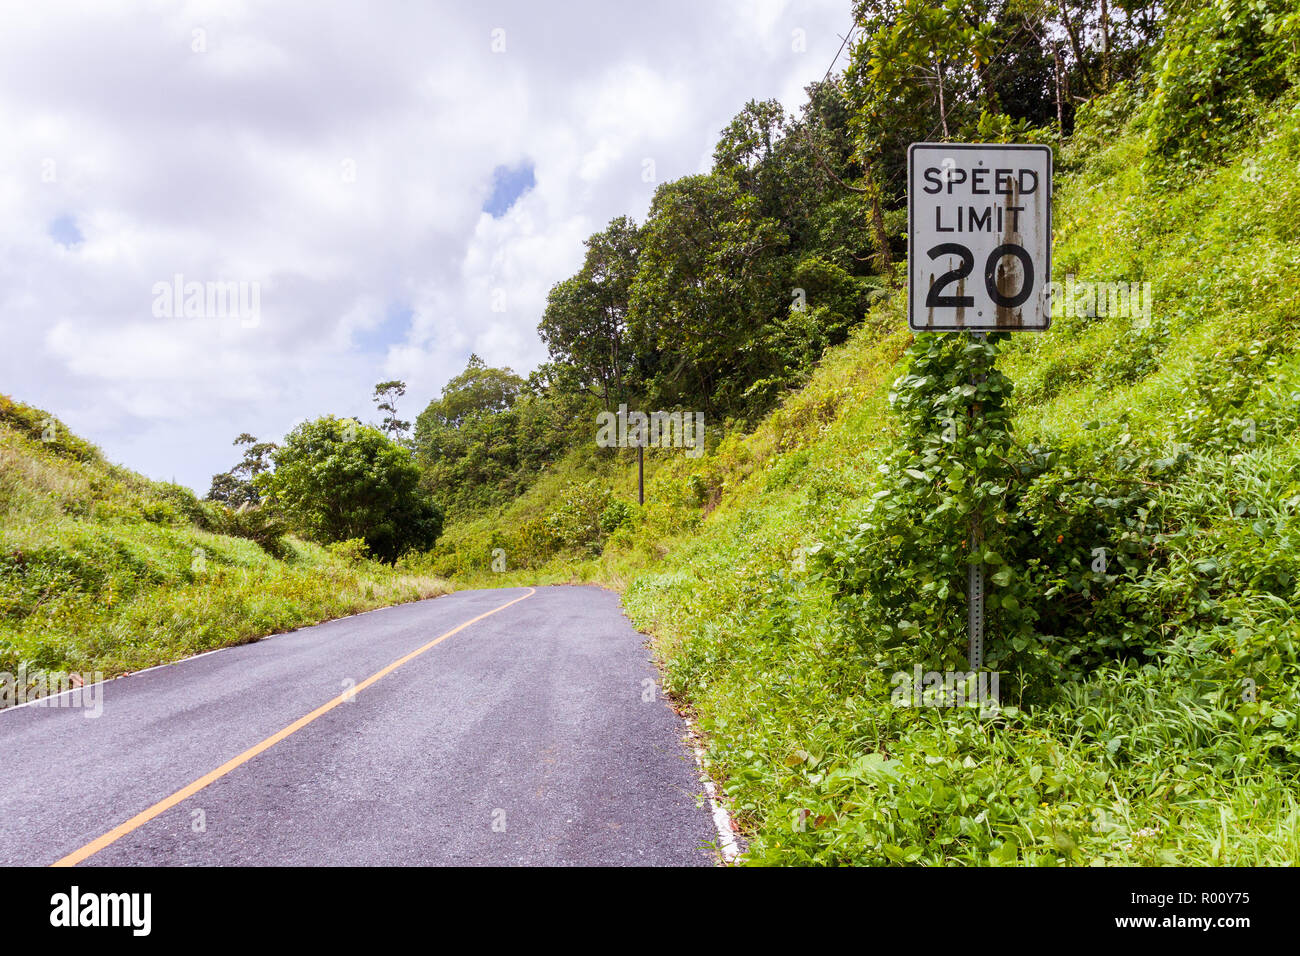 Ee.Uu. blanco de estilo americano del límite de velocidad a 20 km/h en carretera con signo de suciedad lluvia cubierto de manchas de óxido en la selva de la isla de Pohnpei, Micronesia, Oceanía. Foto de stock